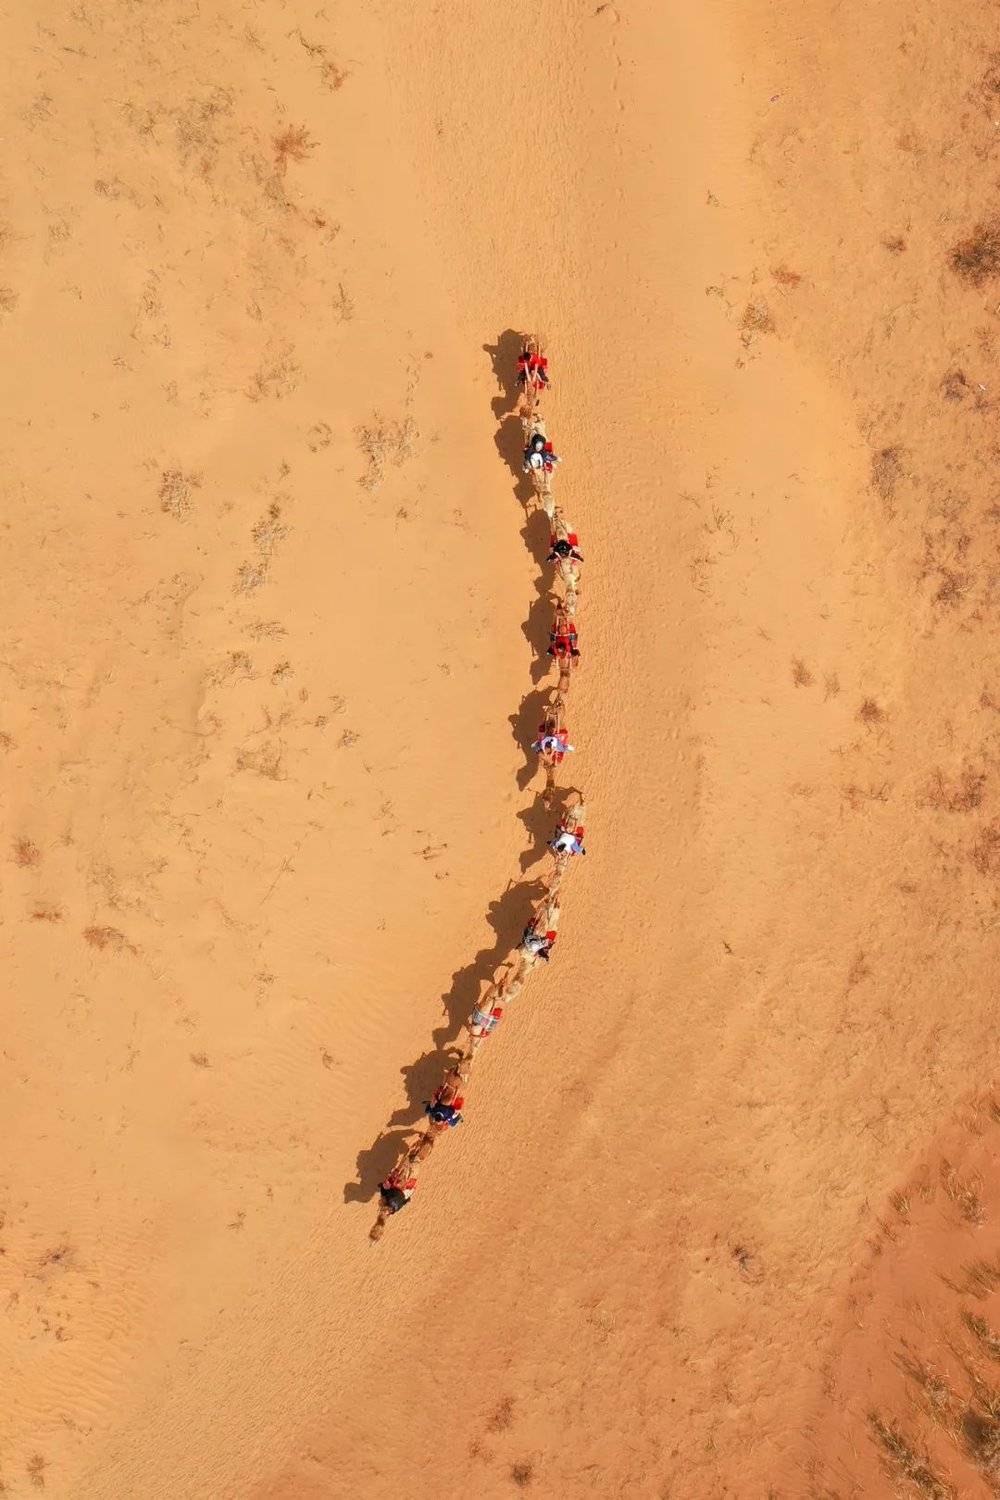 驼队已经成为内蒙古沙漠旅游的保留项目。